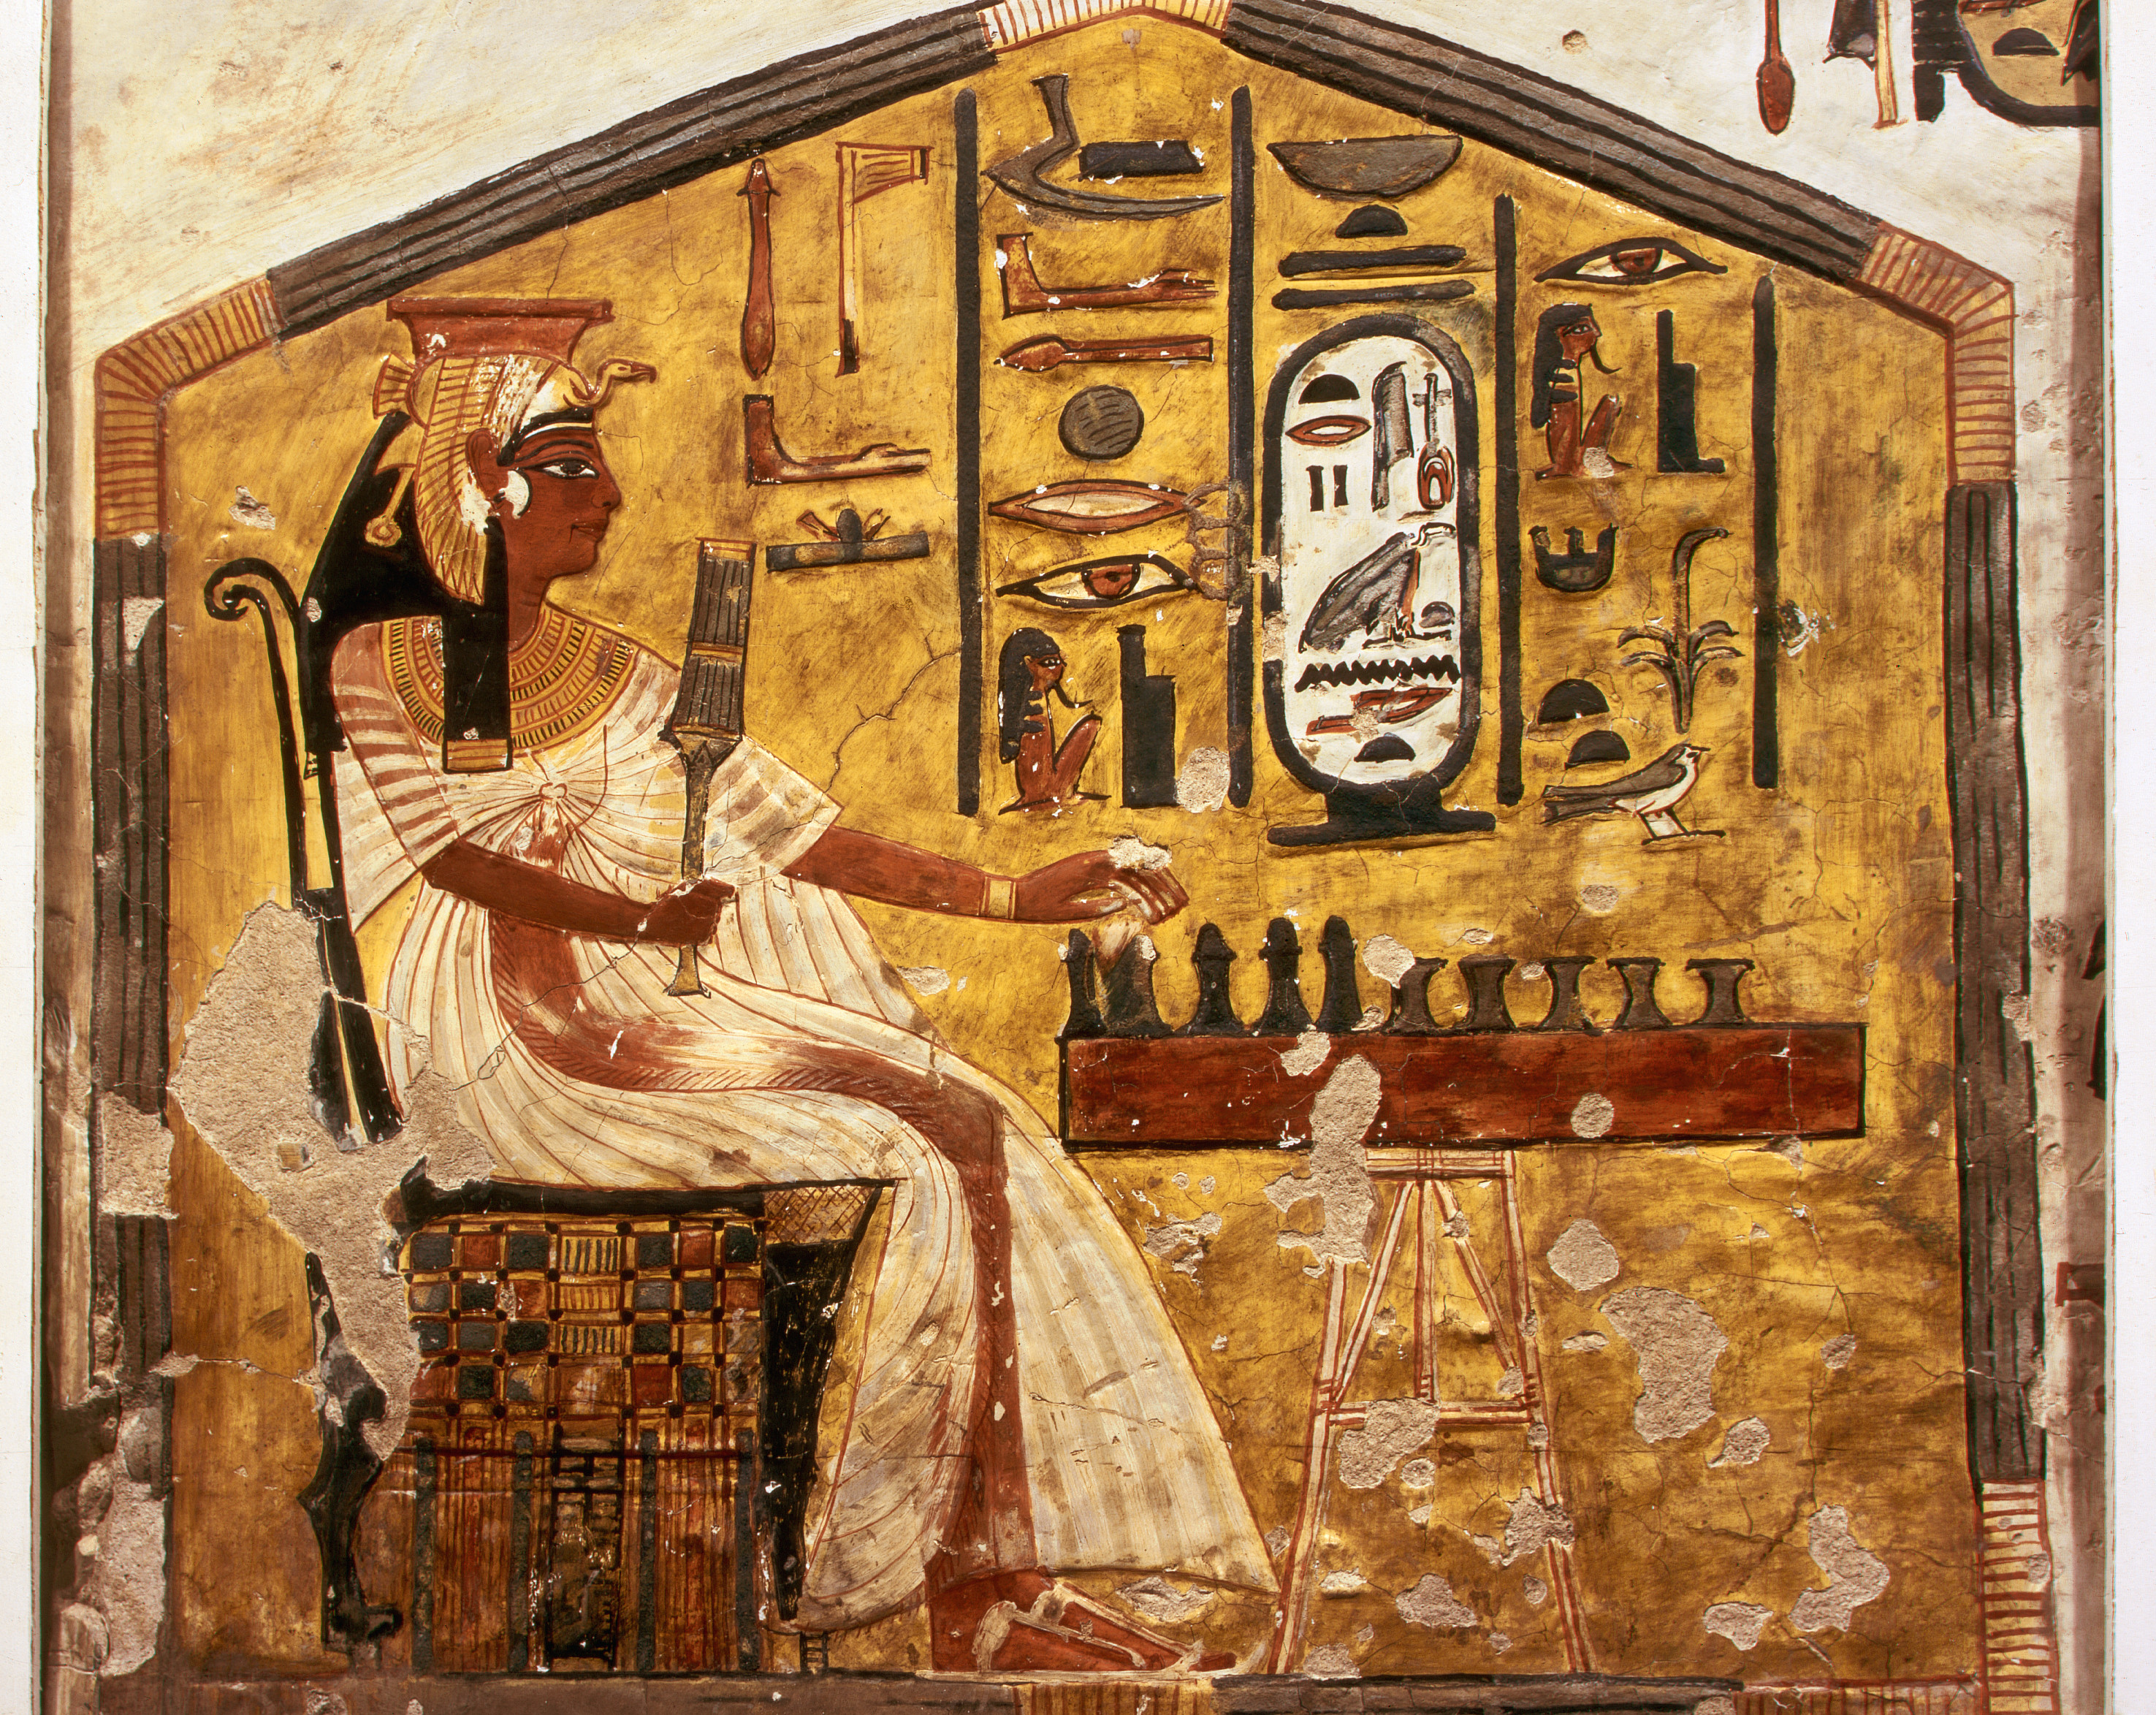 Kraliçe “Senet” Oynuyor by Bilinmeyen Sanatçı - c. 1255 BC 